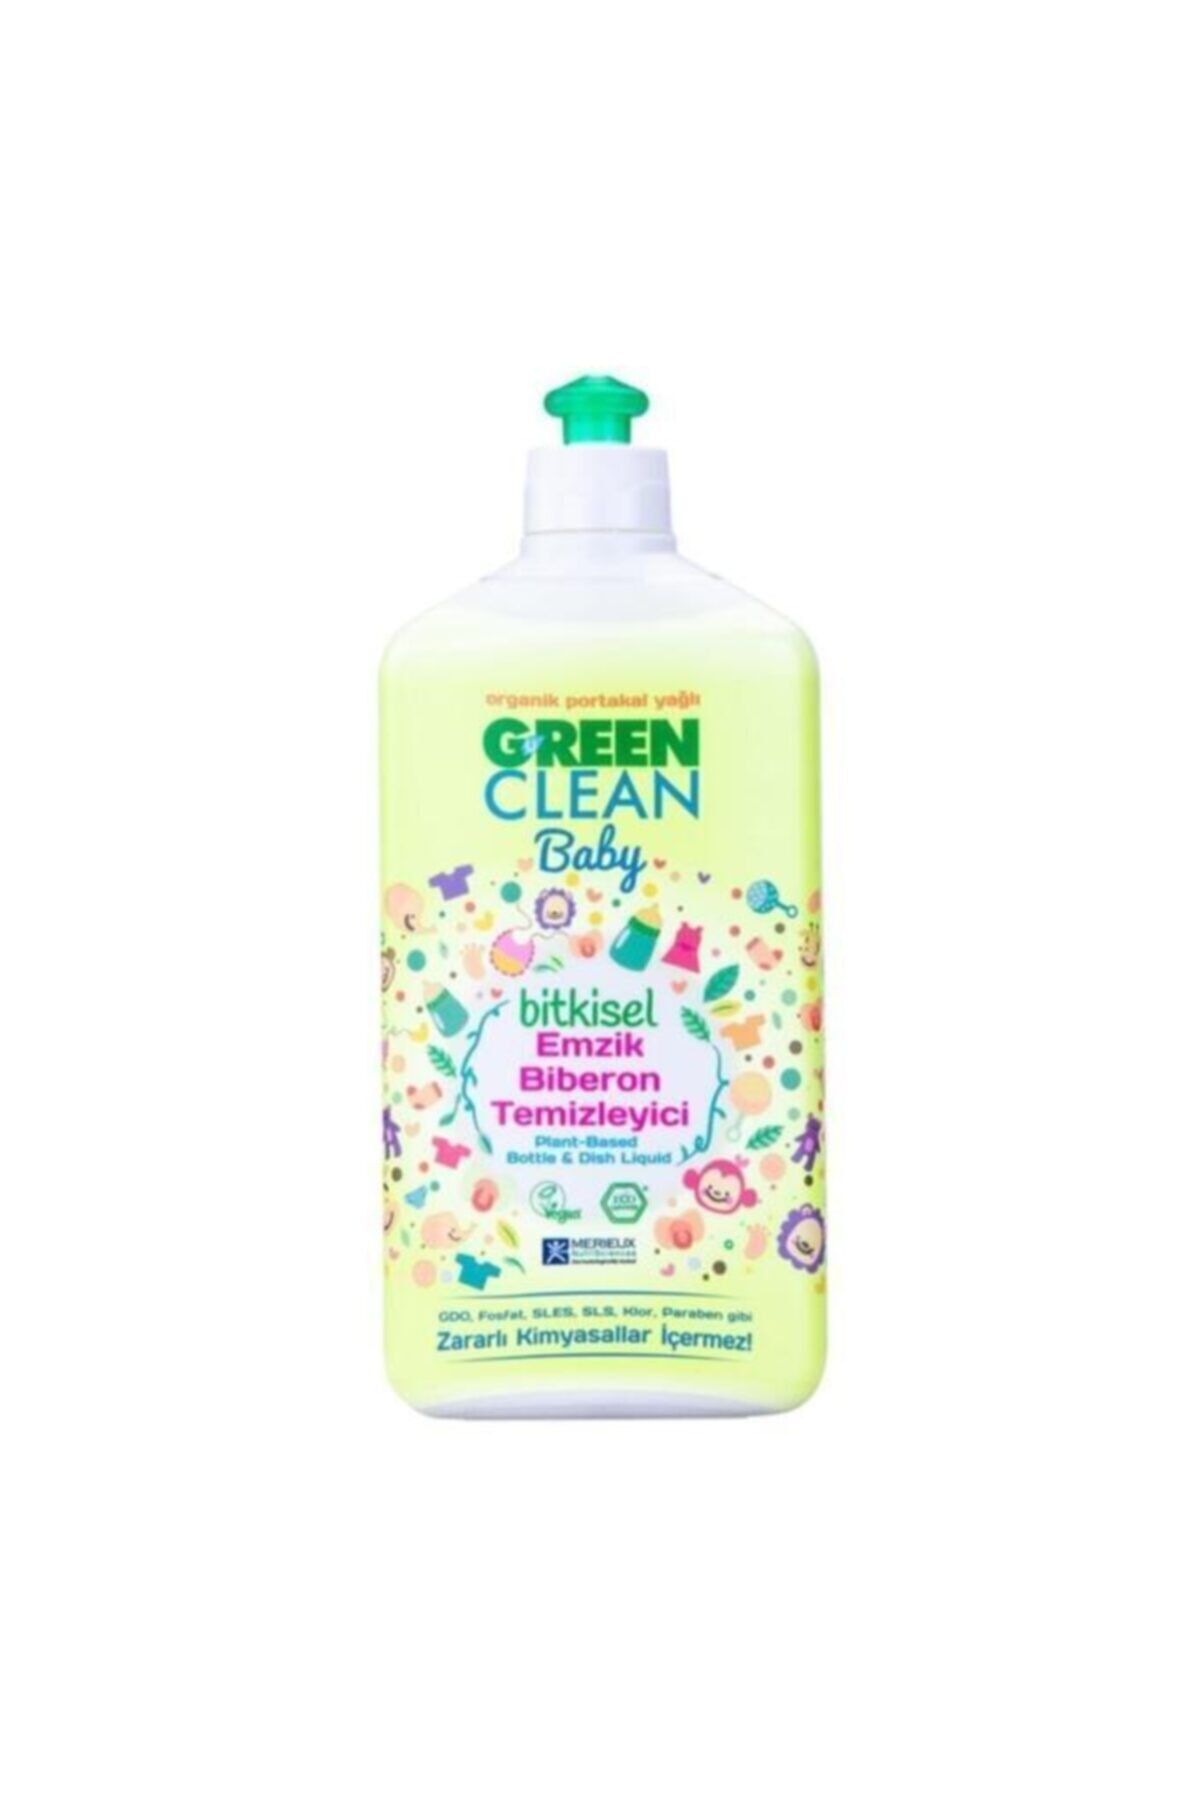 Genel Markalar Green Clean Baby Bitkisel Emzik Biberon Temizleyici 500ml